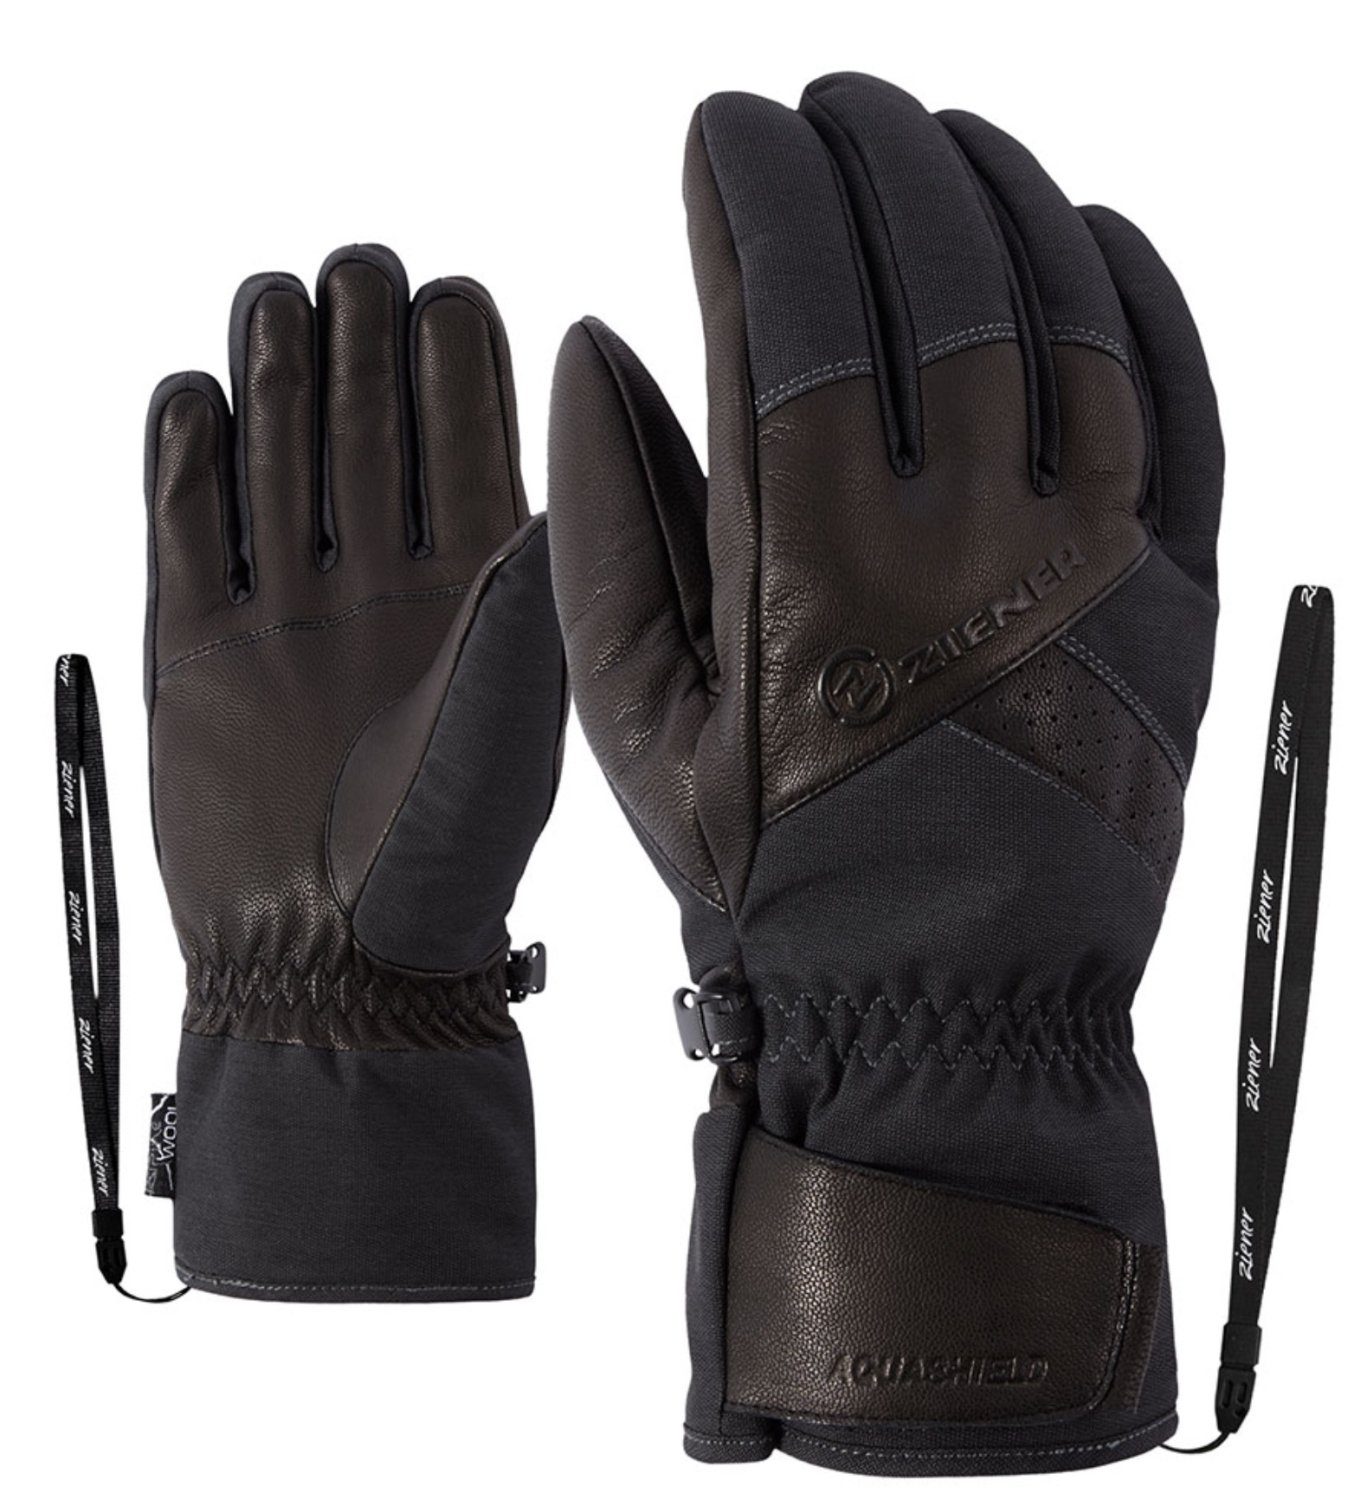 Ziener Skihandschuhe »GETTER AS(R) AW glove ski alpine« online kaufen | OTTO